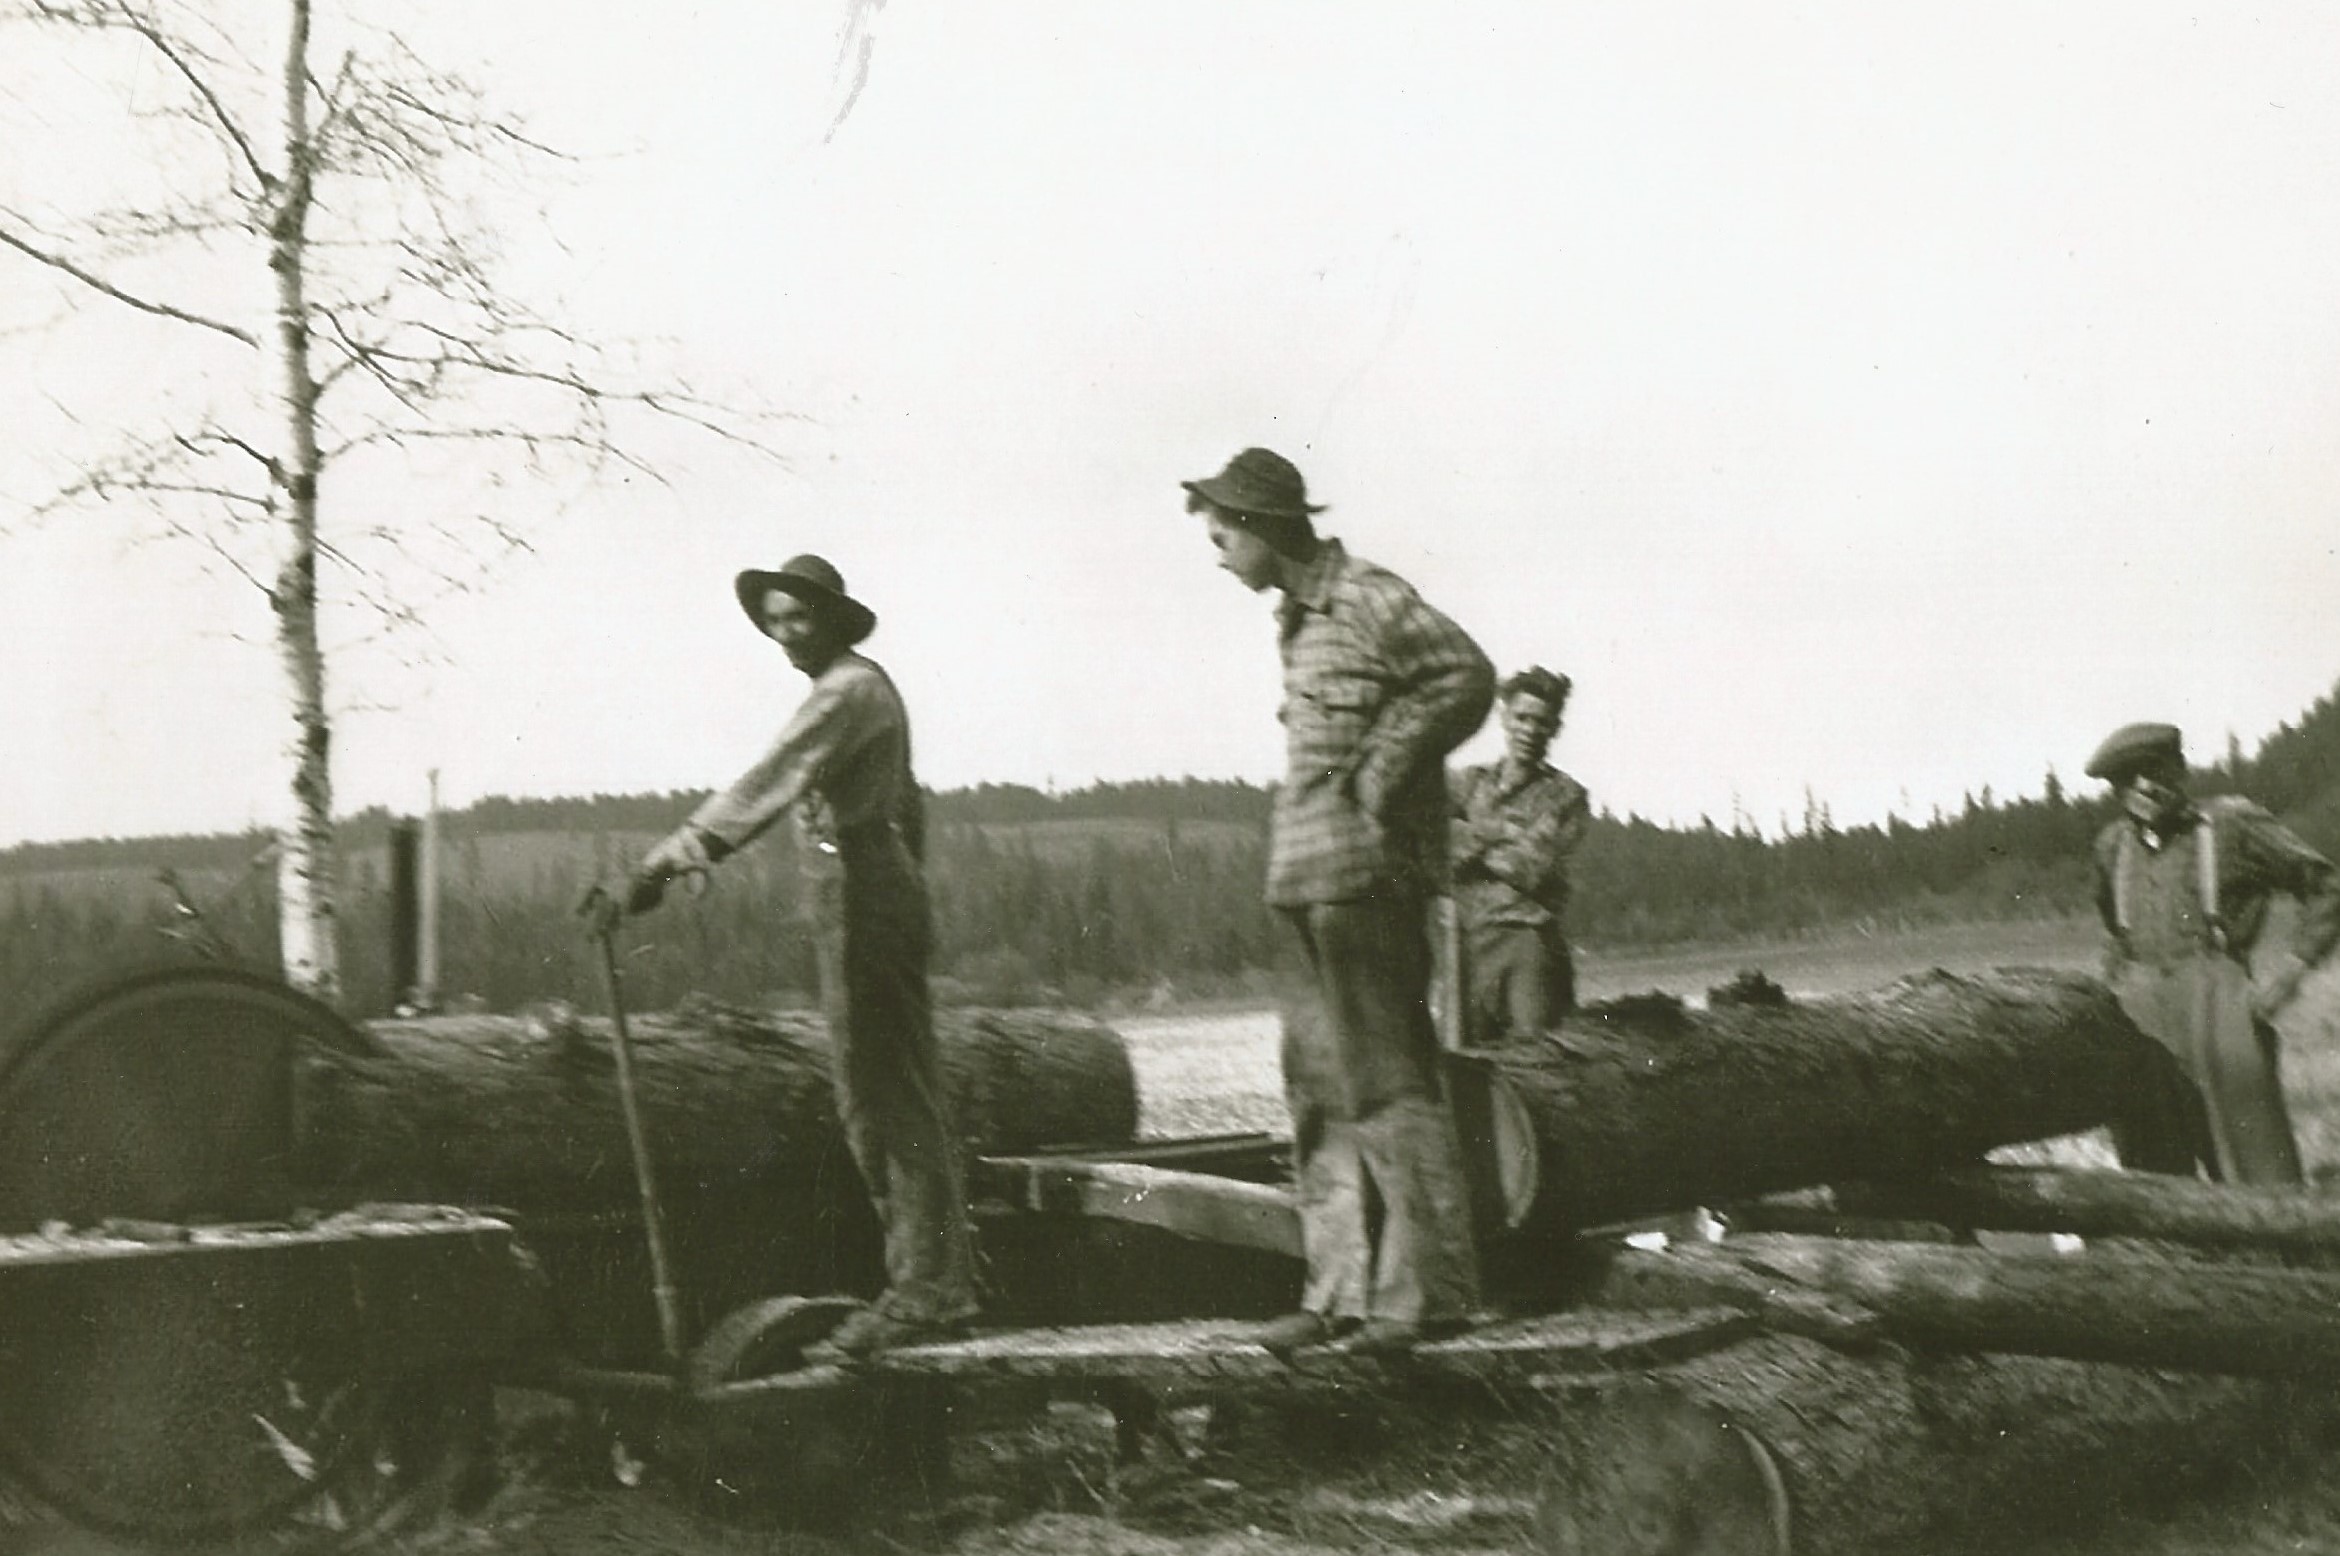 Quatre hommes travaillent à côté d’une scierie rudimentaire. La scie coupe une bûche de mélèze. Une autre bûche est sur un chariot pour être coupée après. La scierie est au milieu d’un champ.